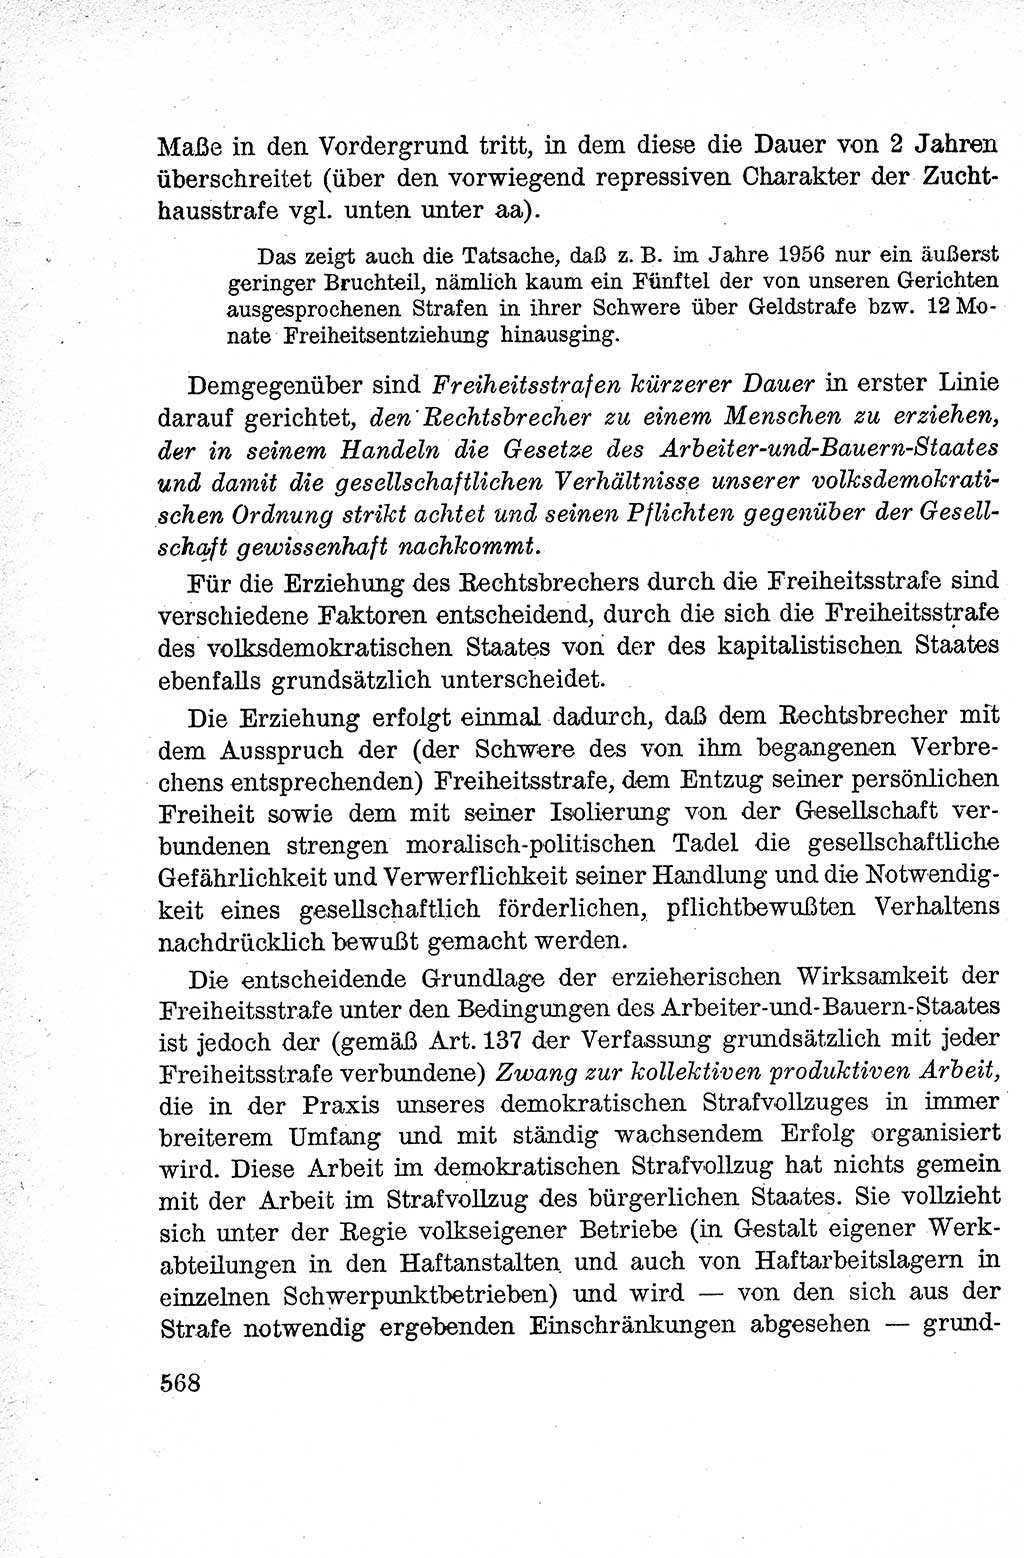 Lehrbuch des Strafrechts der Deutschen Demokratischen Republik (DDR), Allgemeiner Teil 1959, Seite 568 (Lb. Strafr. DDR AT 1959, S. 568)